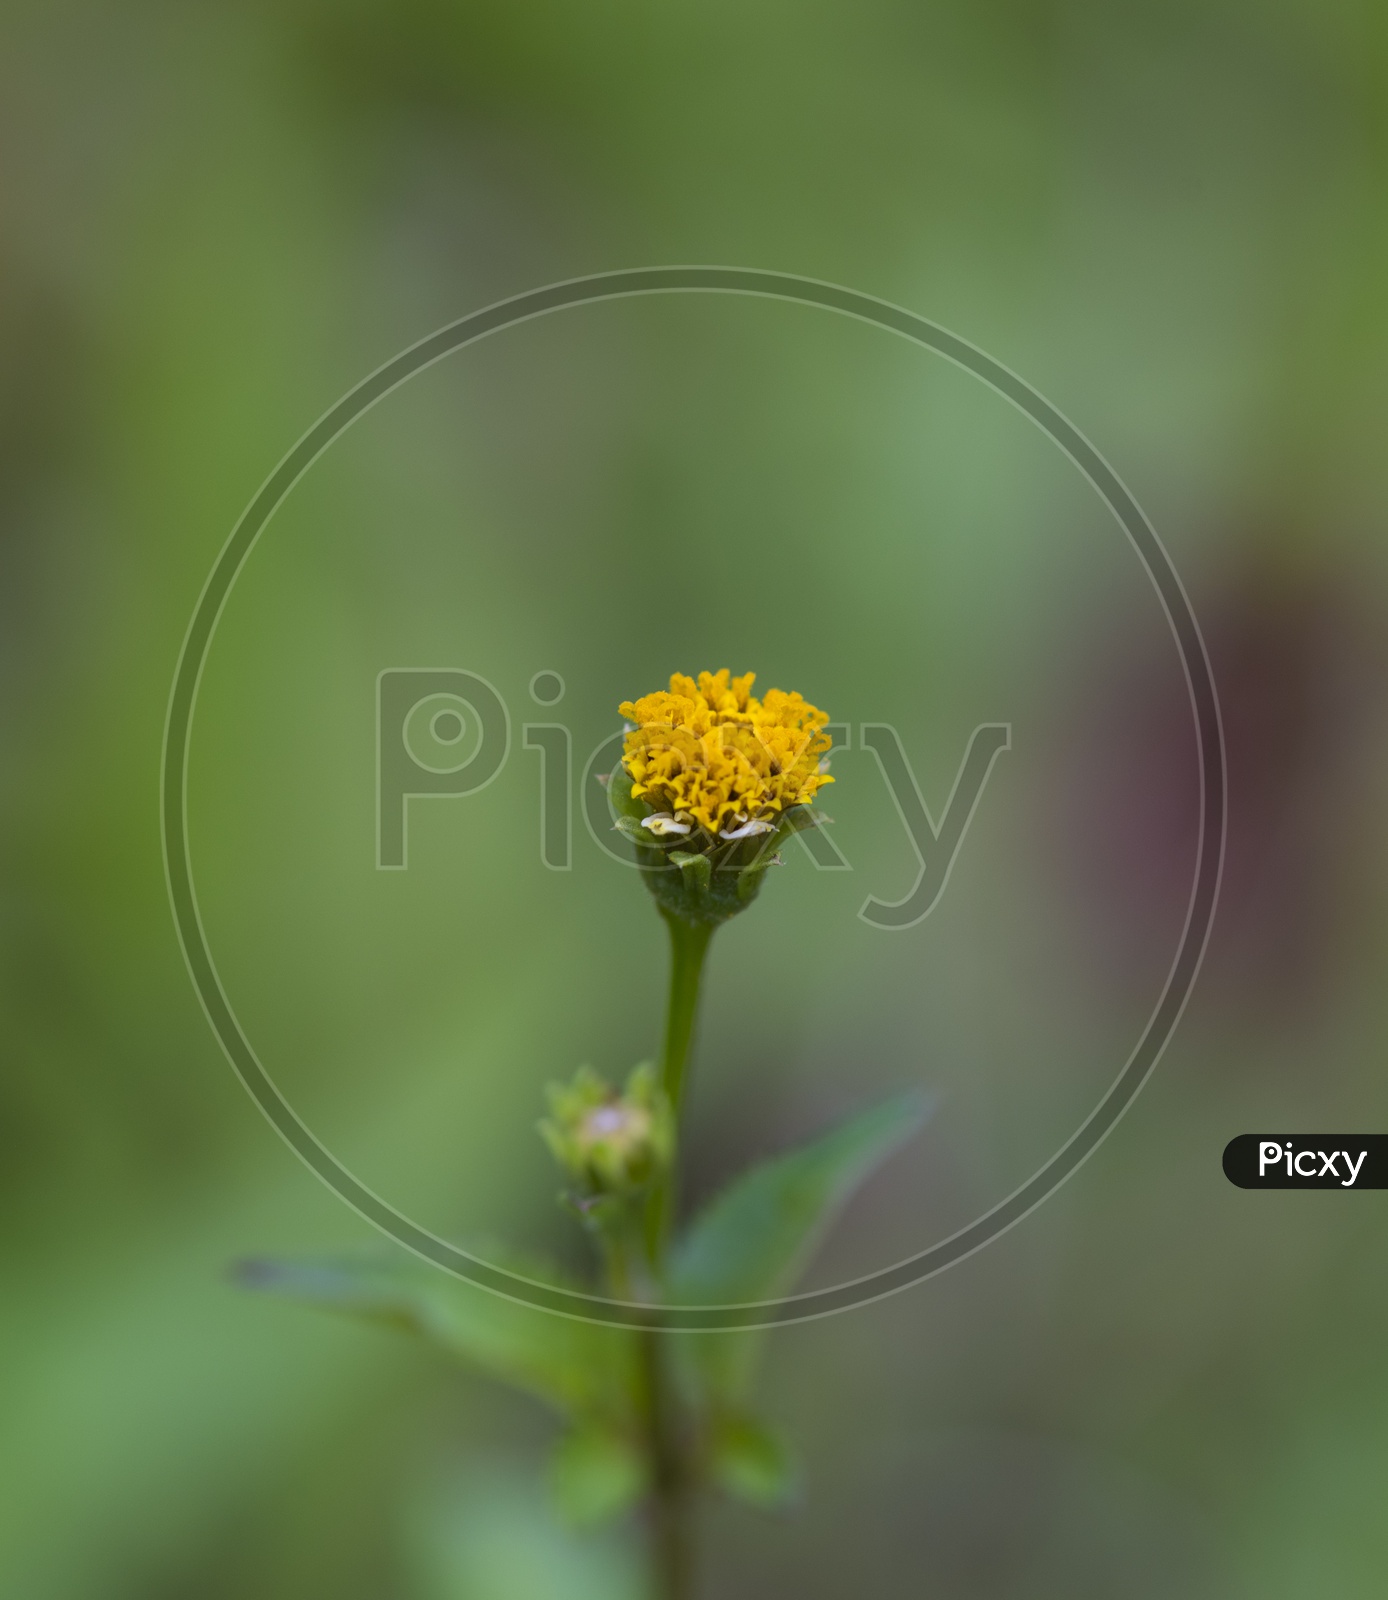 A Marigold flower bud